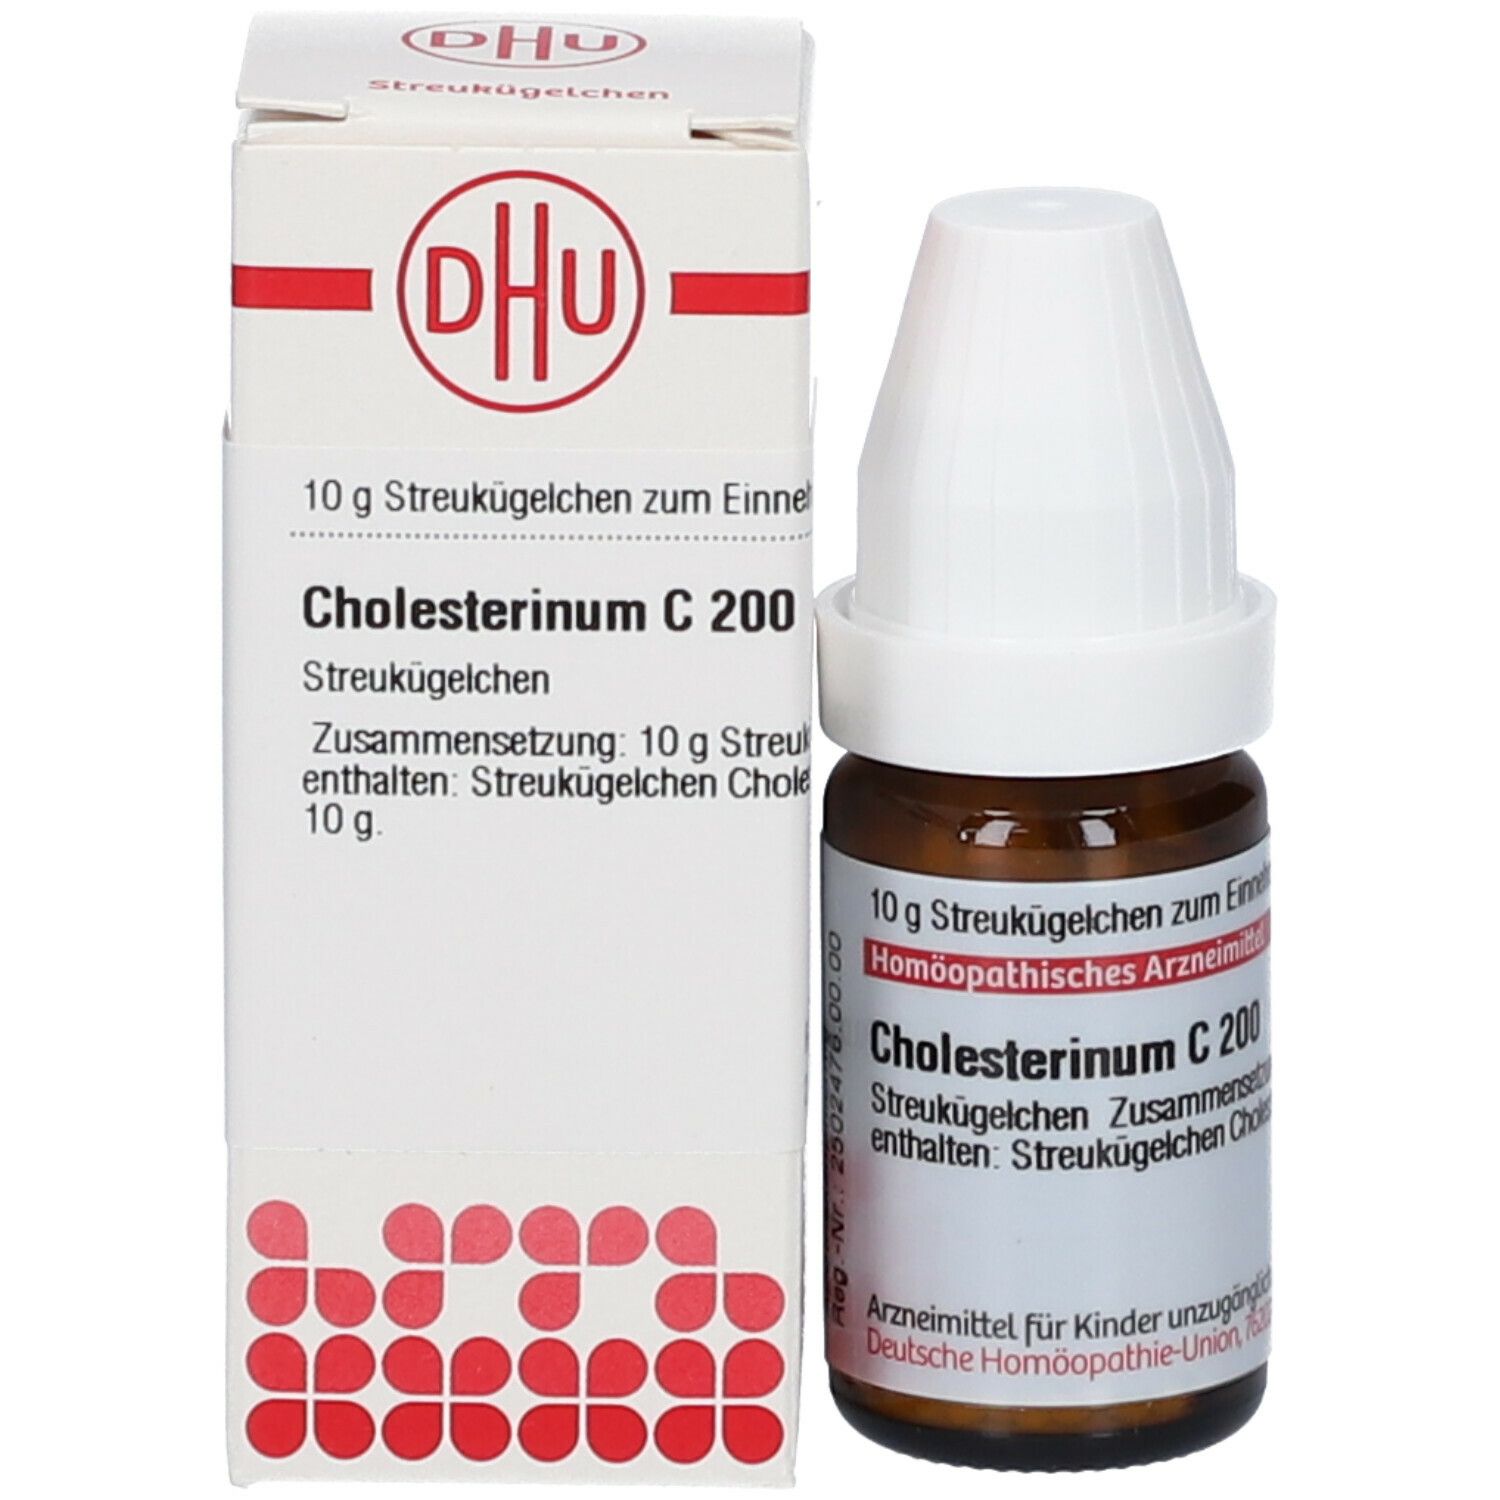 DHU Cholesterinum C200